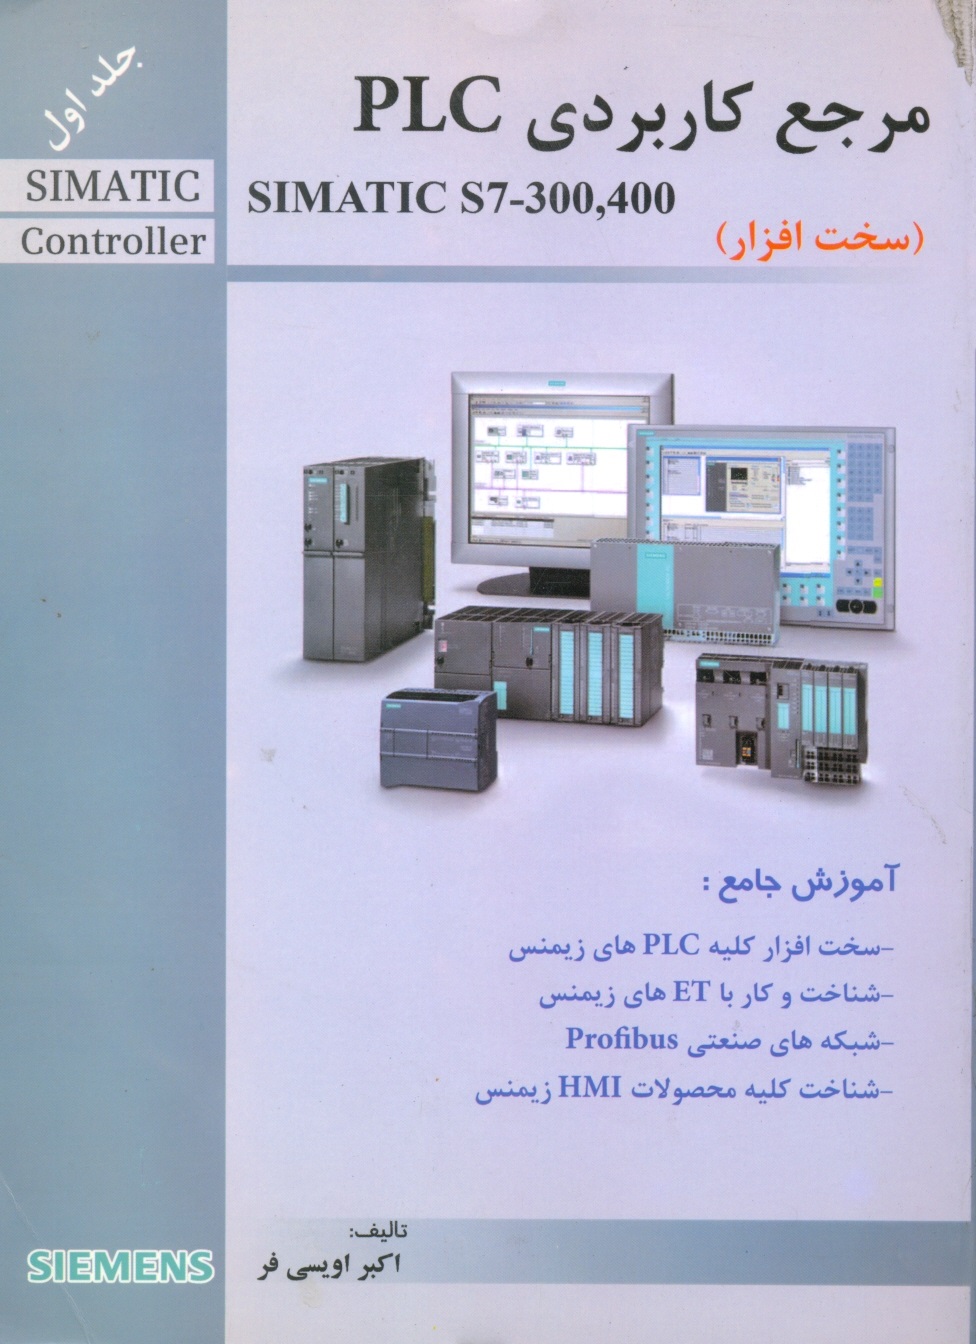 مرجع کاربردیزی SIMATIC S7300-400 PLC ج1(اویسی فر)قدیس